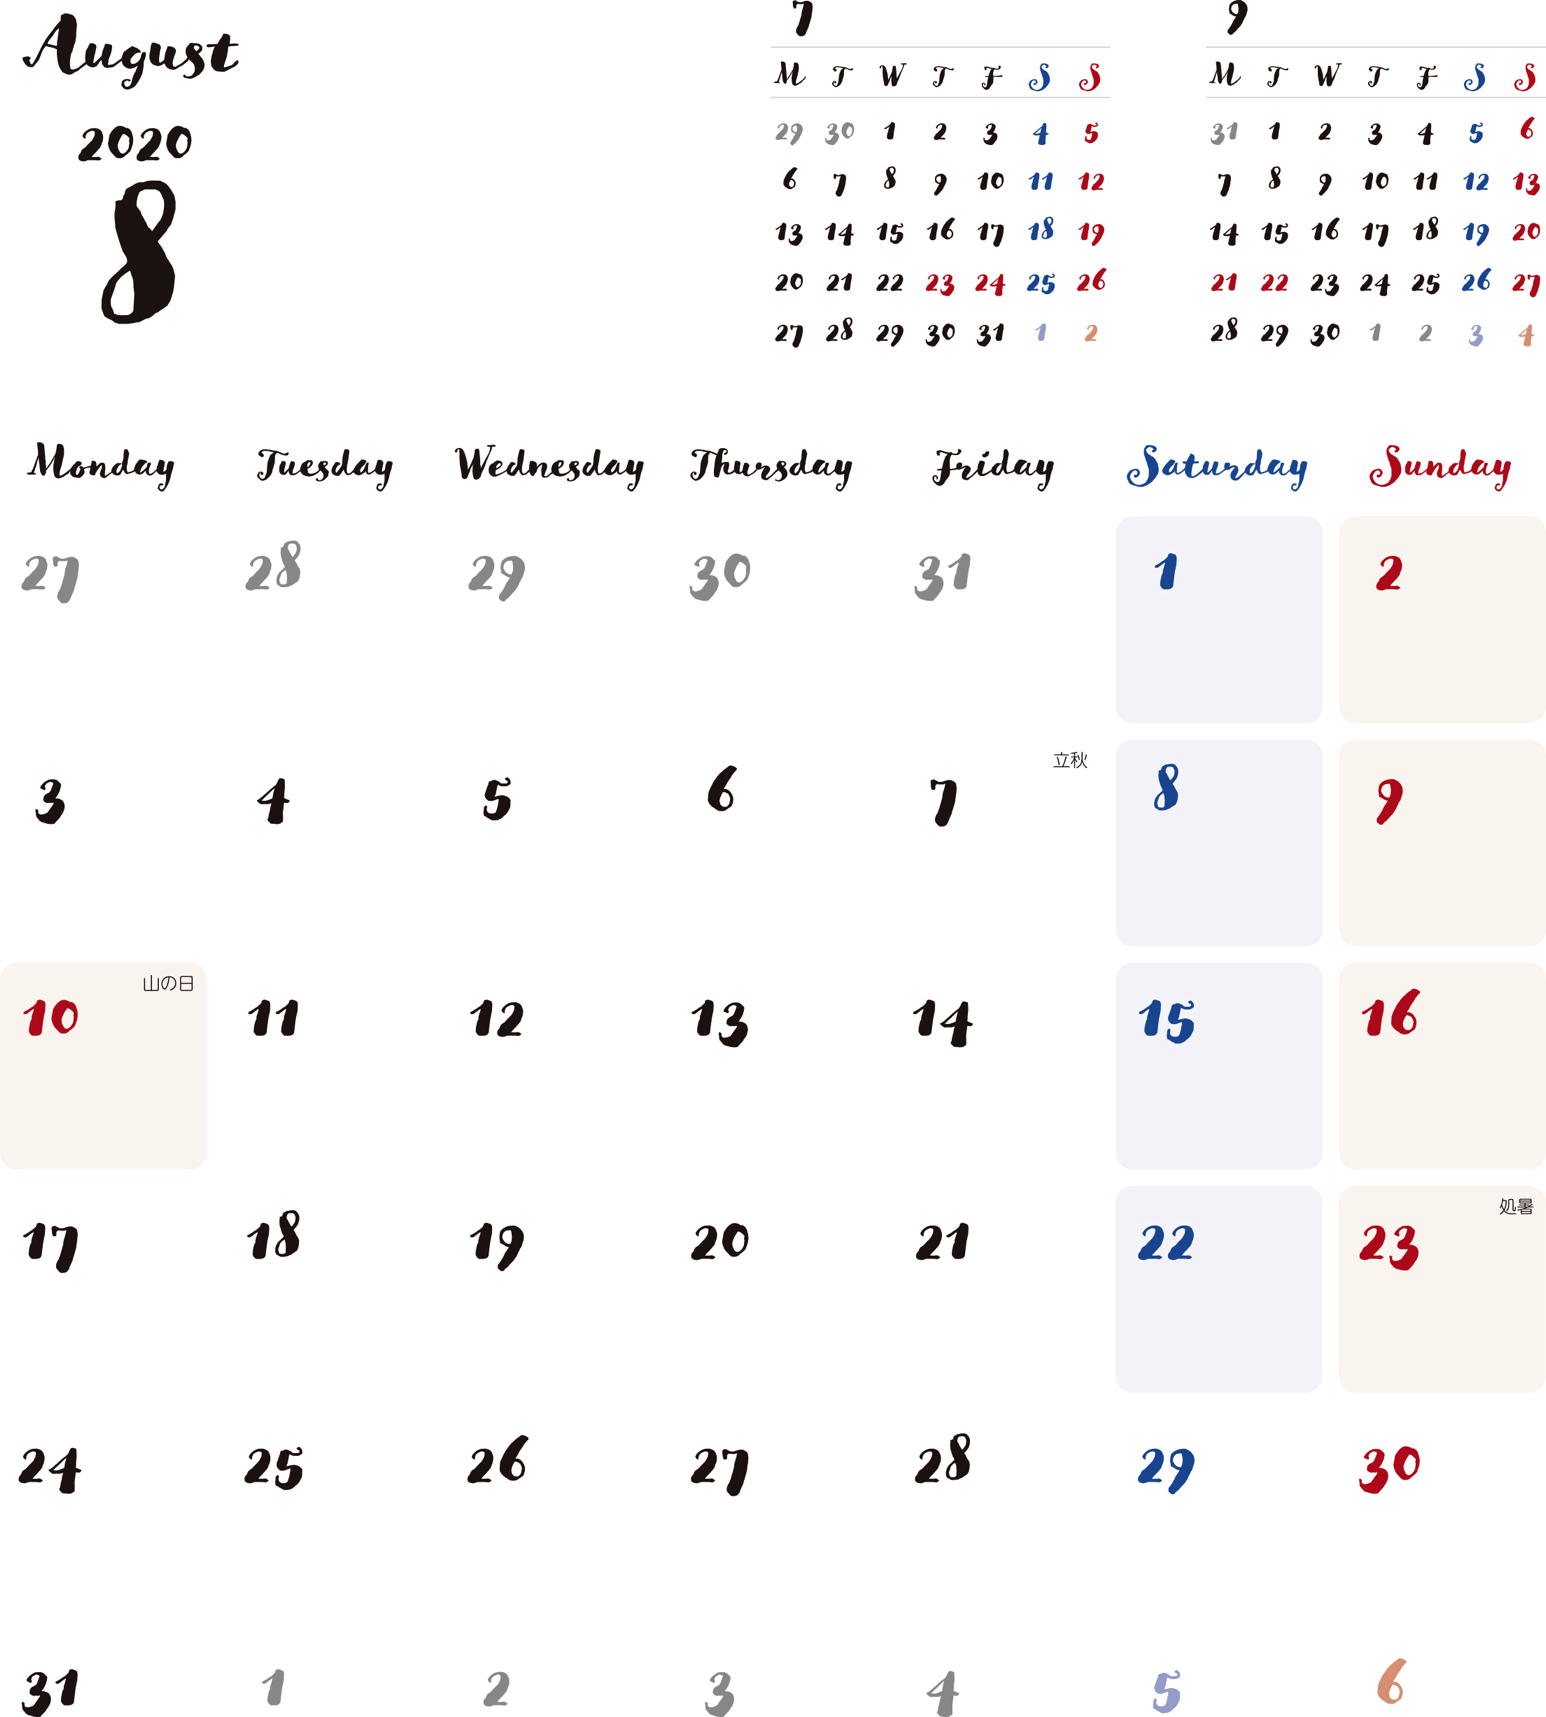 カレンダー 無料 8月 シンプルなカレンダー 手書き風 1ヶ月毎 月曜始まり 公式 イラスト素材サイト イラストダウンロード